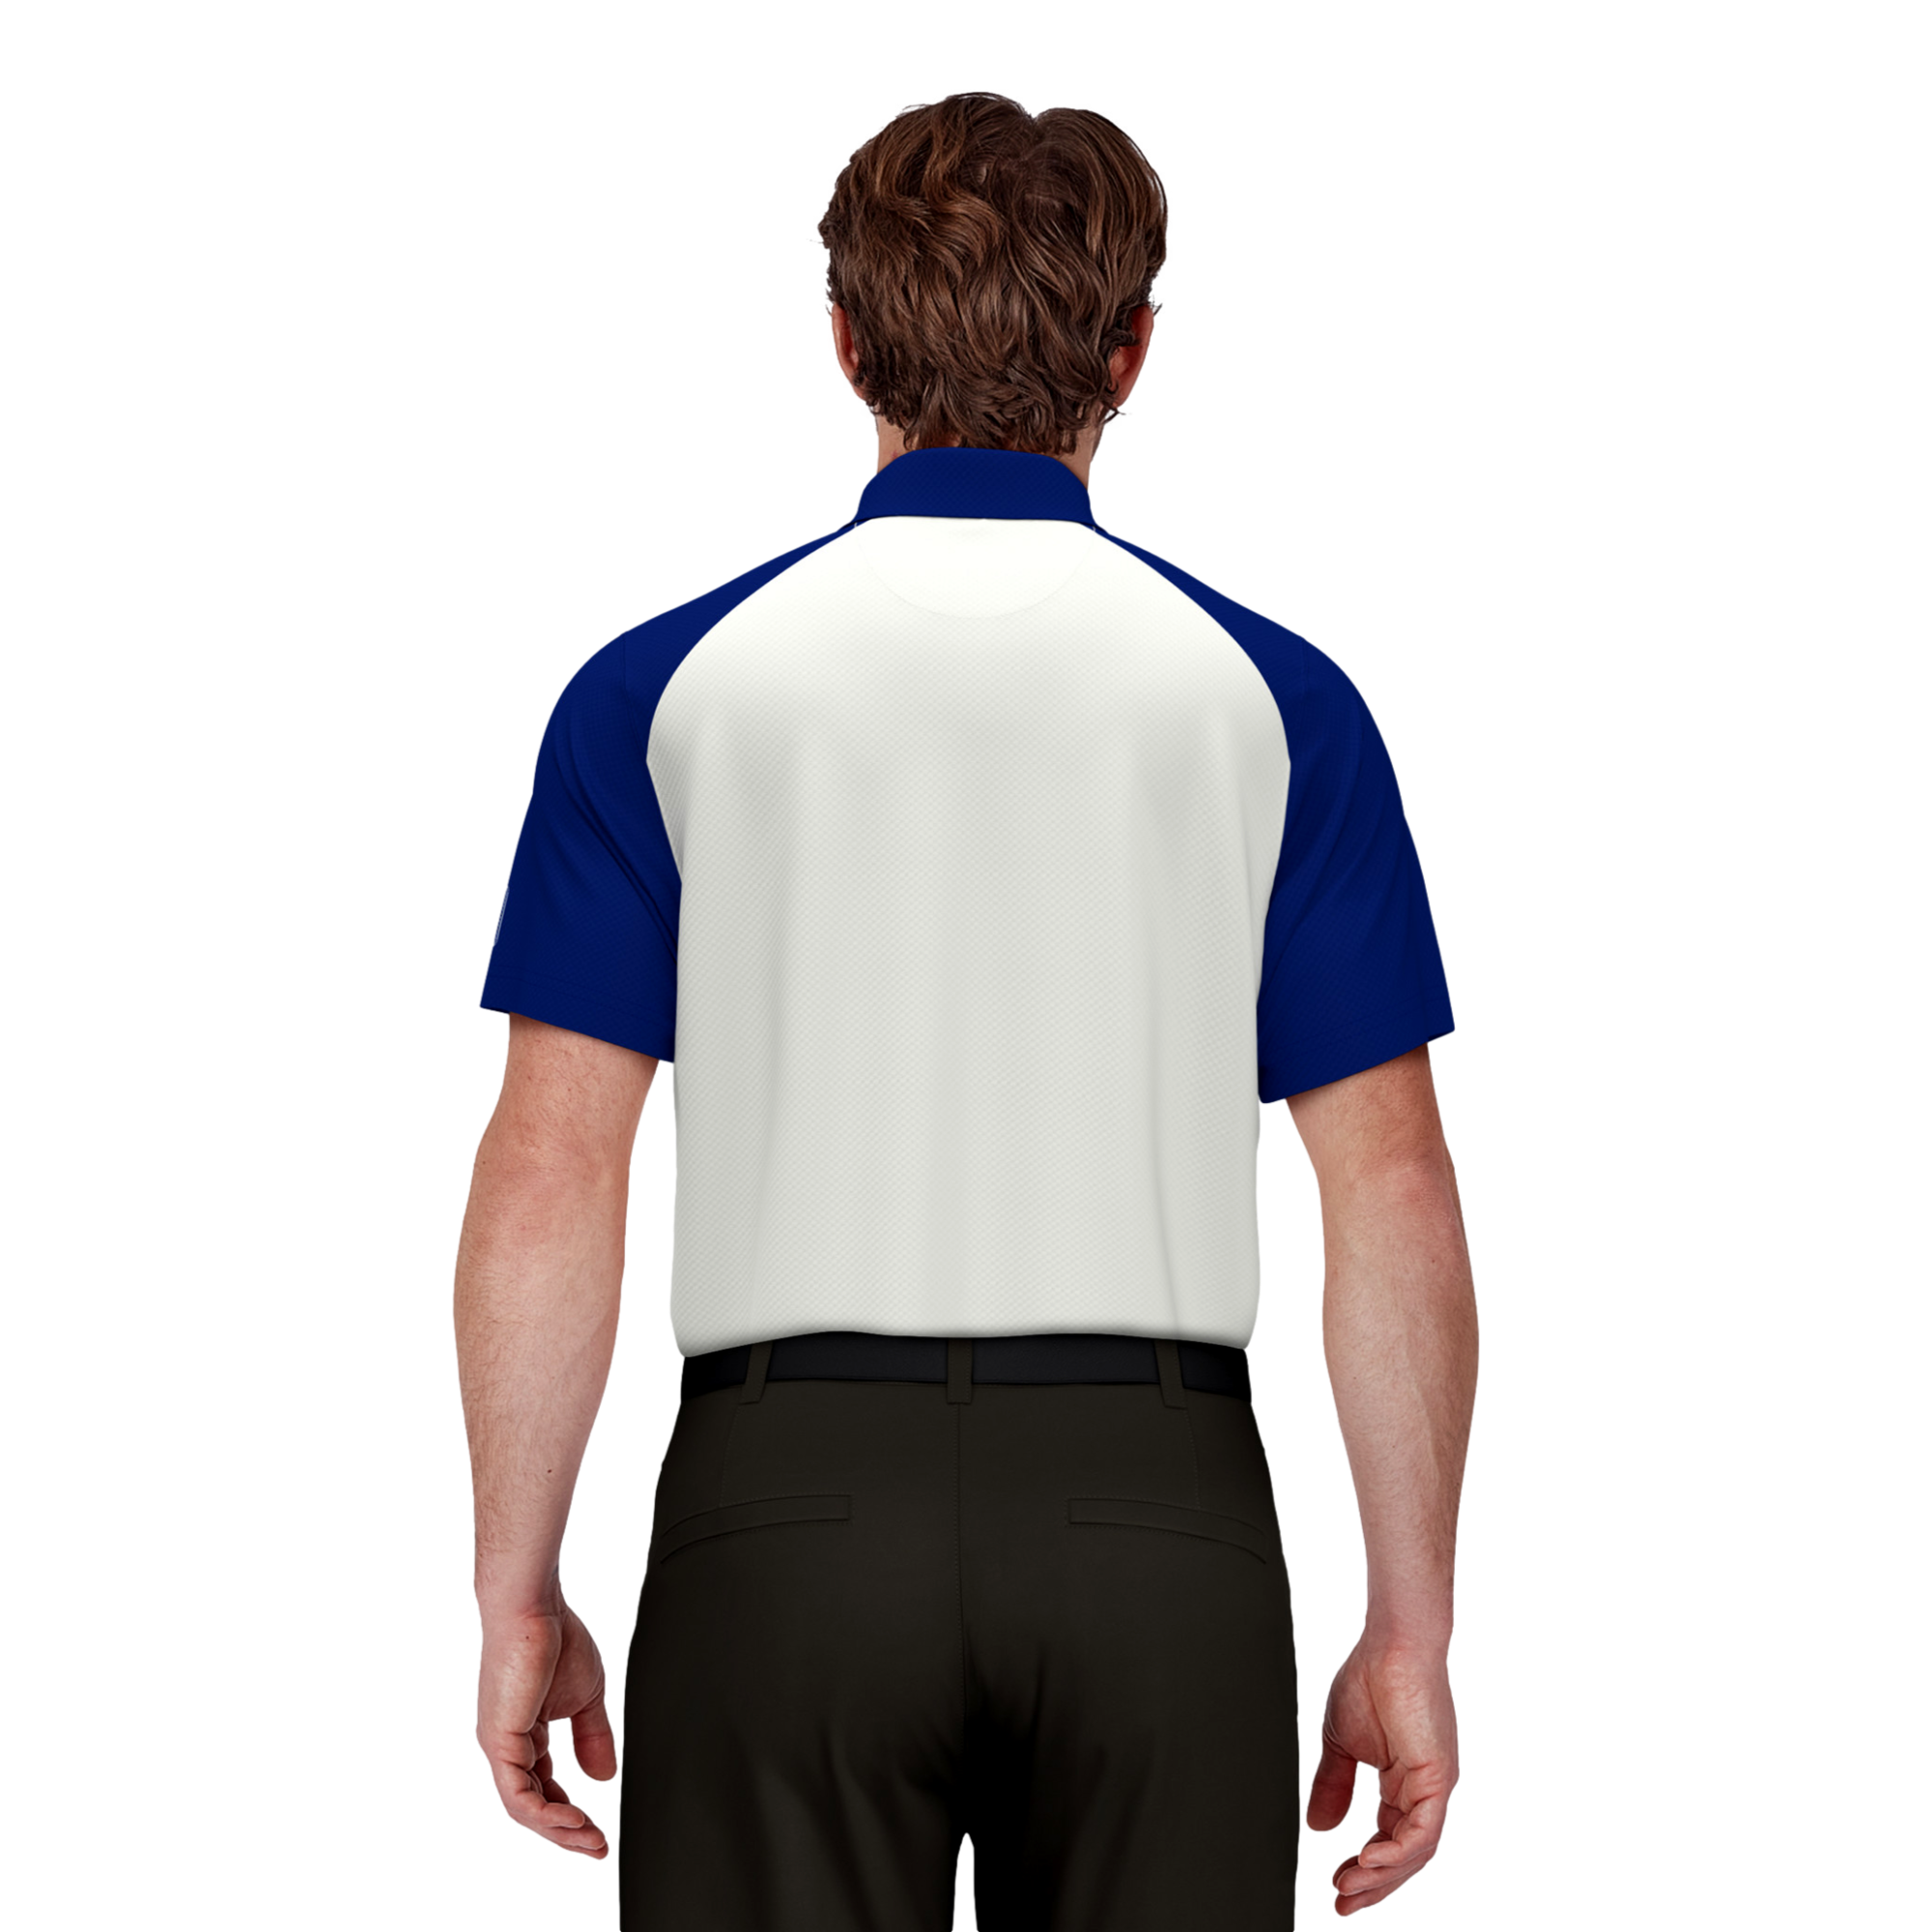 Polo Ralph Lauren Cotton Sleeveless Polo Shirt, Golf Equipment: Clubs,  Balls, Bags